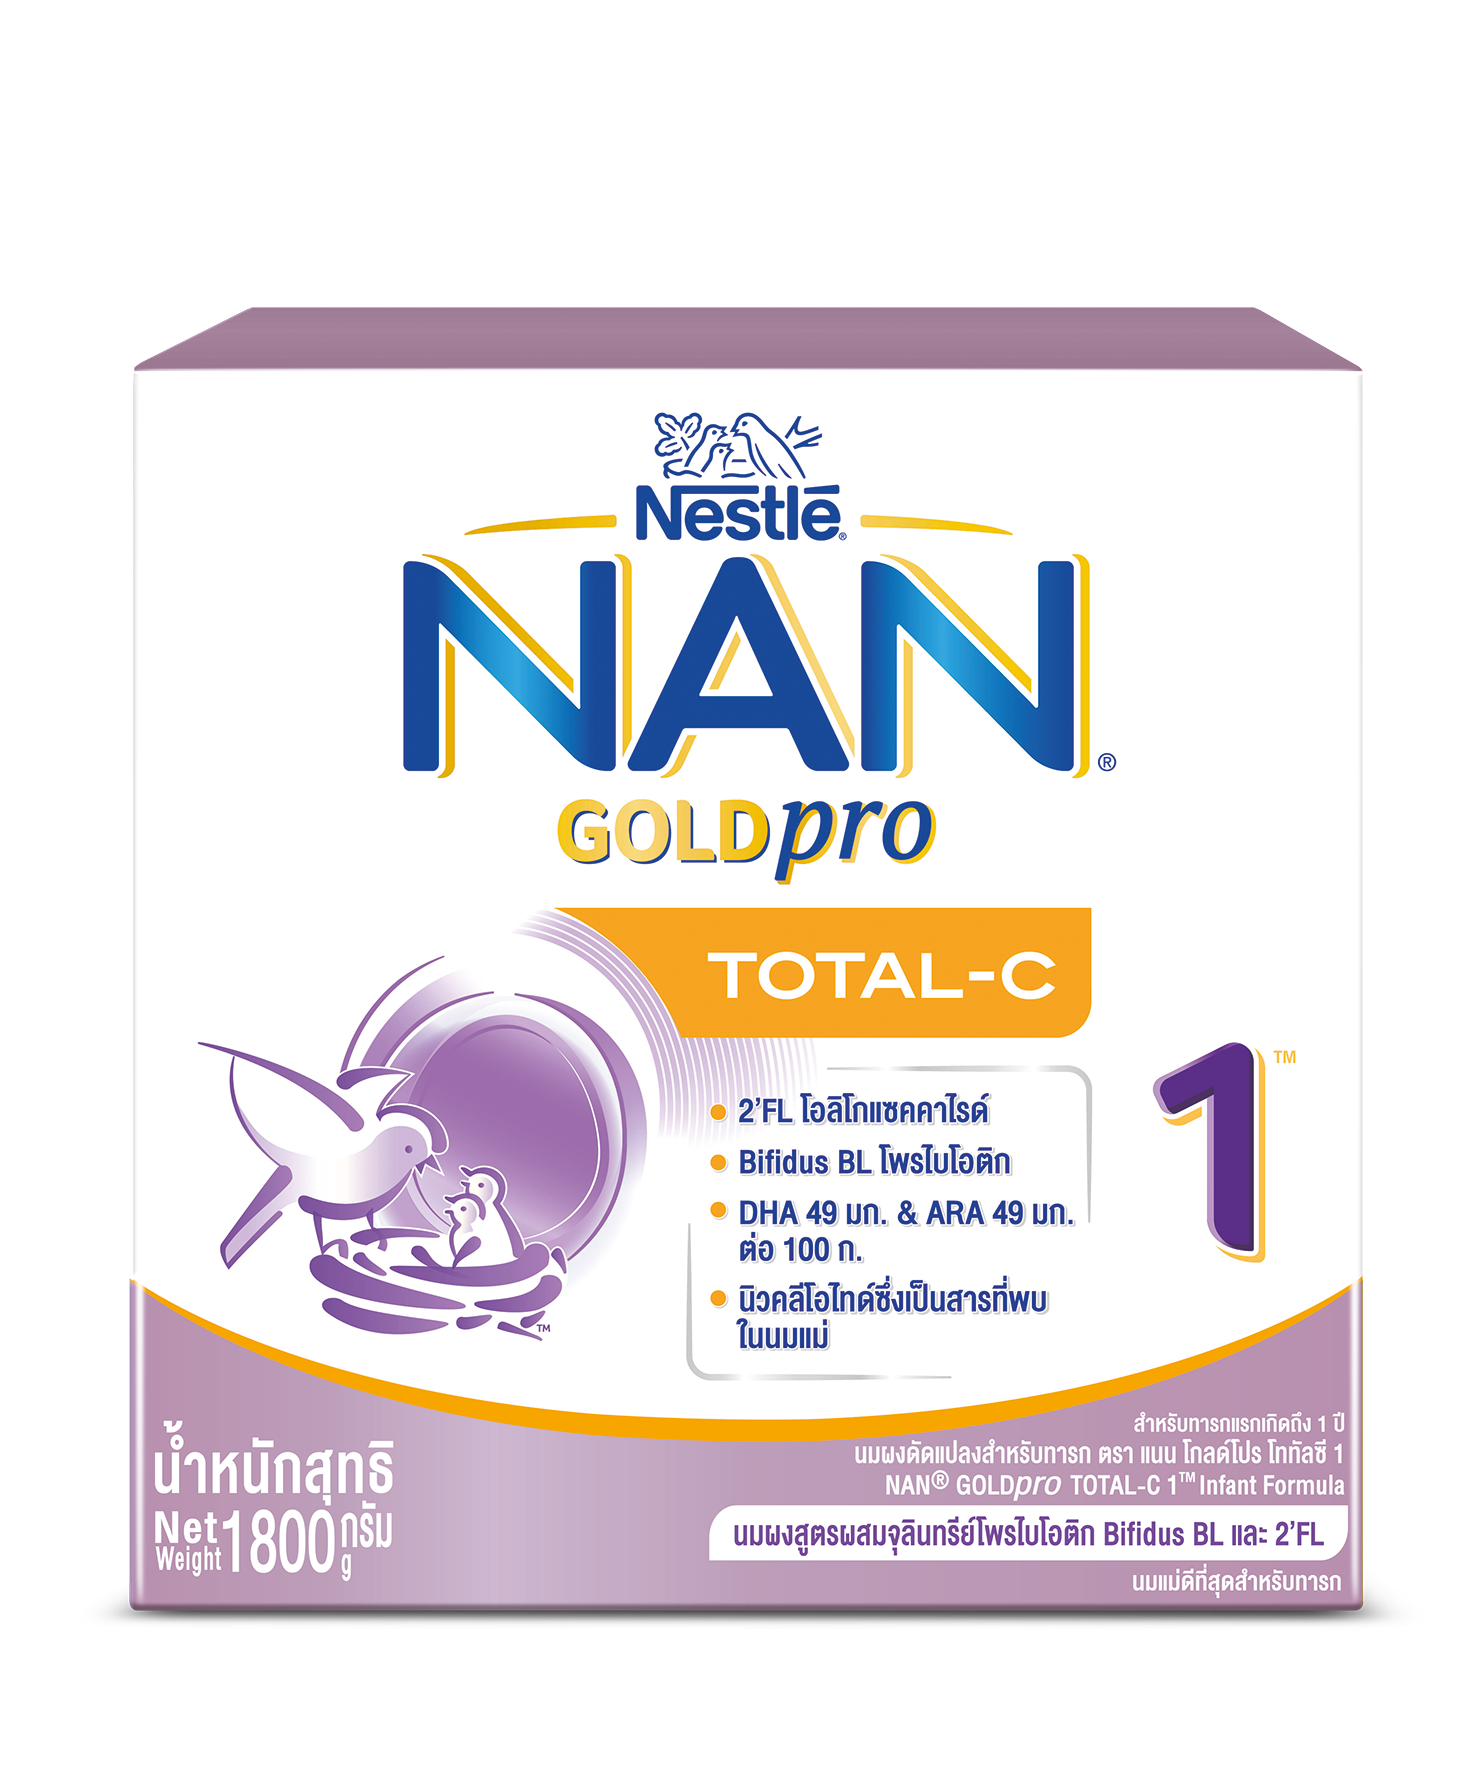 ภาพประกอบของ [นมผง] NAN GOLDpro นมผง แนน โกลด์โปร โททัลซี 1 สูตร 1  1,800 กรัม นมผงสำหรับเด็กแรกเกิด - 1 ปี 800 กรัม